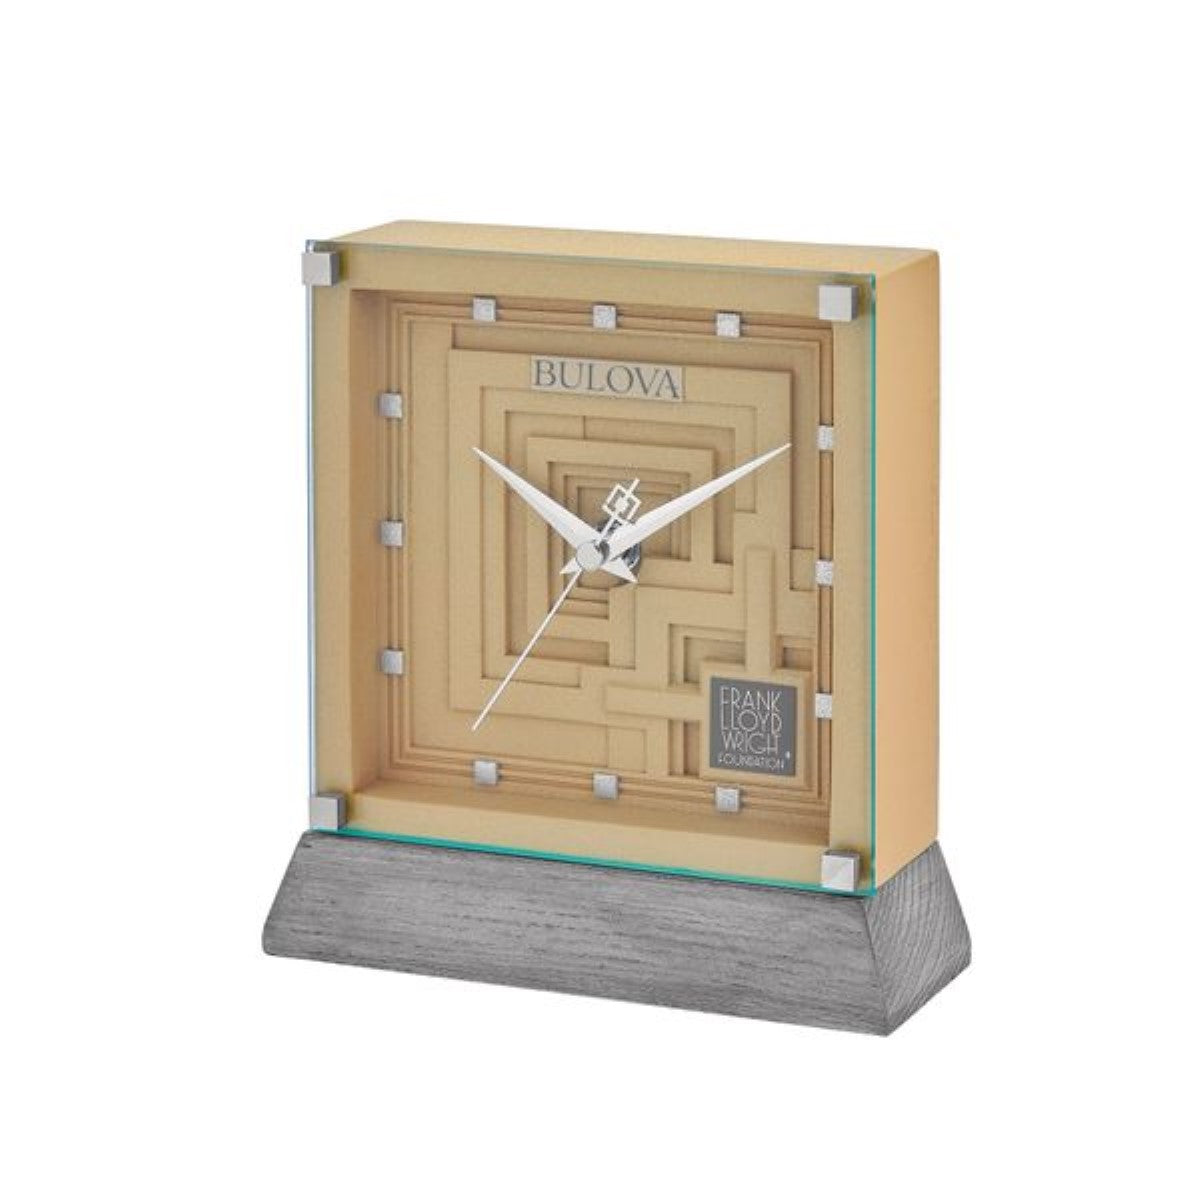 Bulova B7755 Ennis Frank Lloyd Wright Mantel Clock